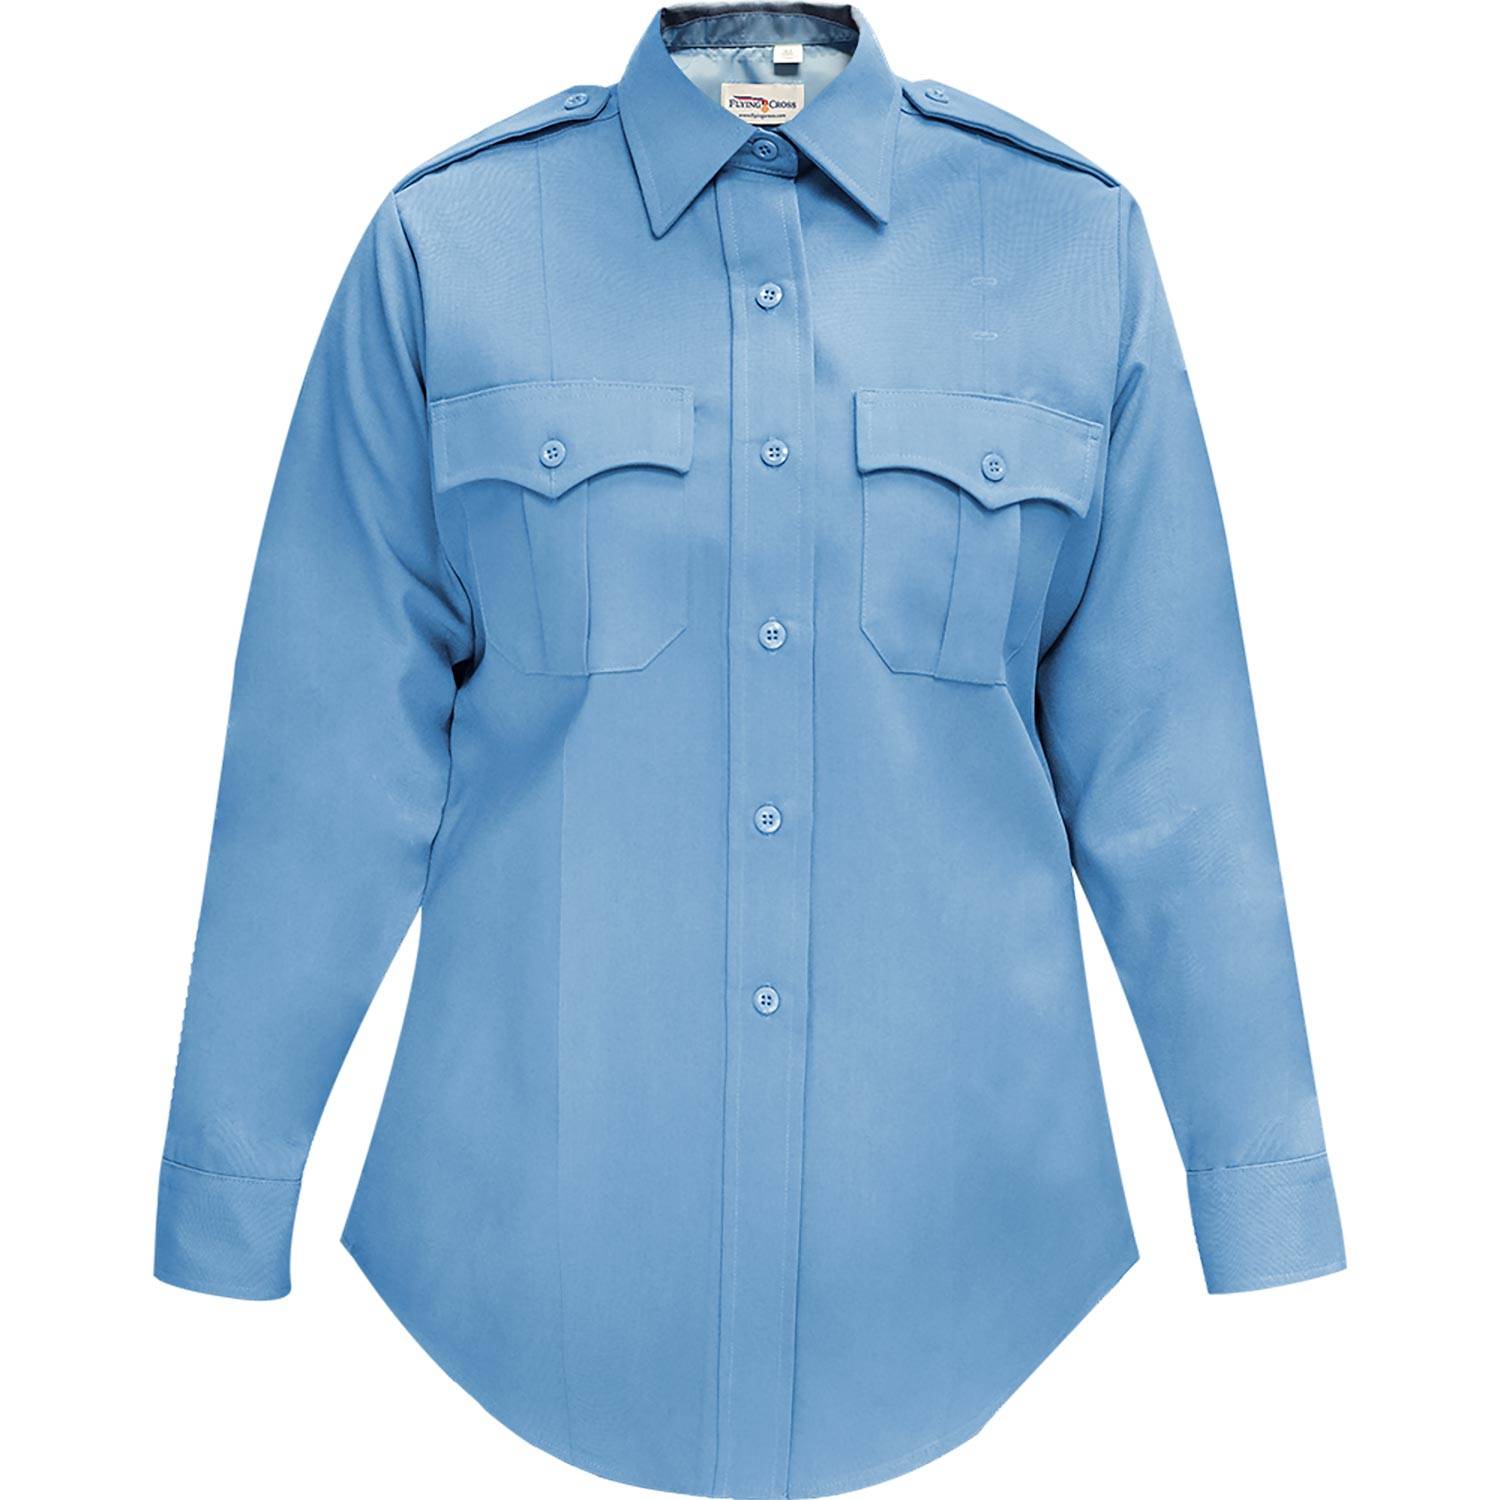  Flying Cross Long Sleeve Firefighter Shirt for Women